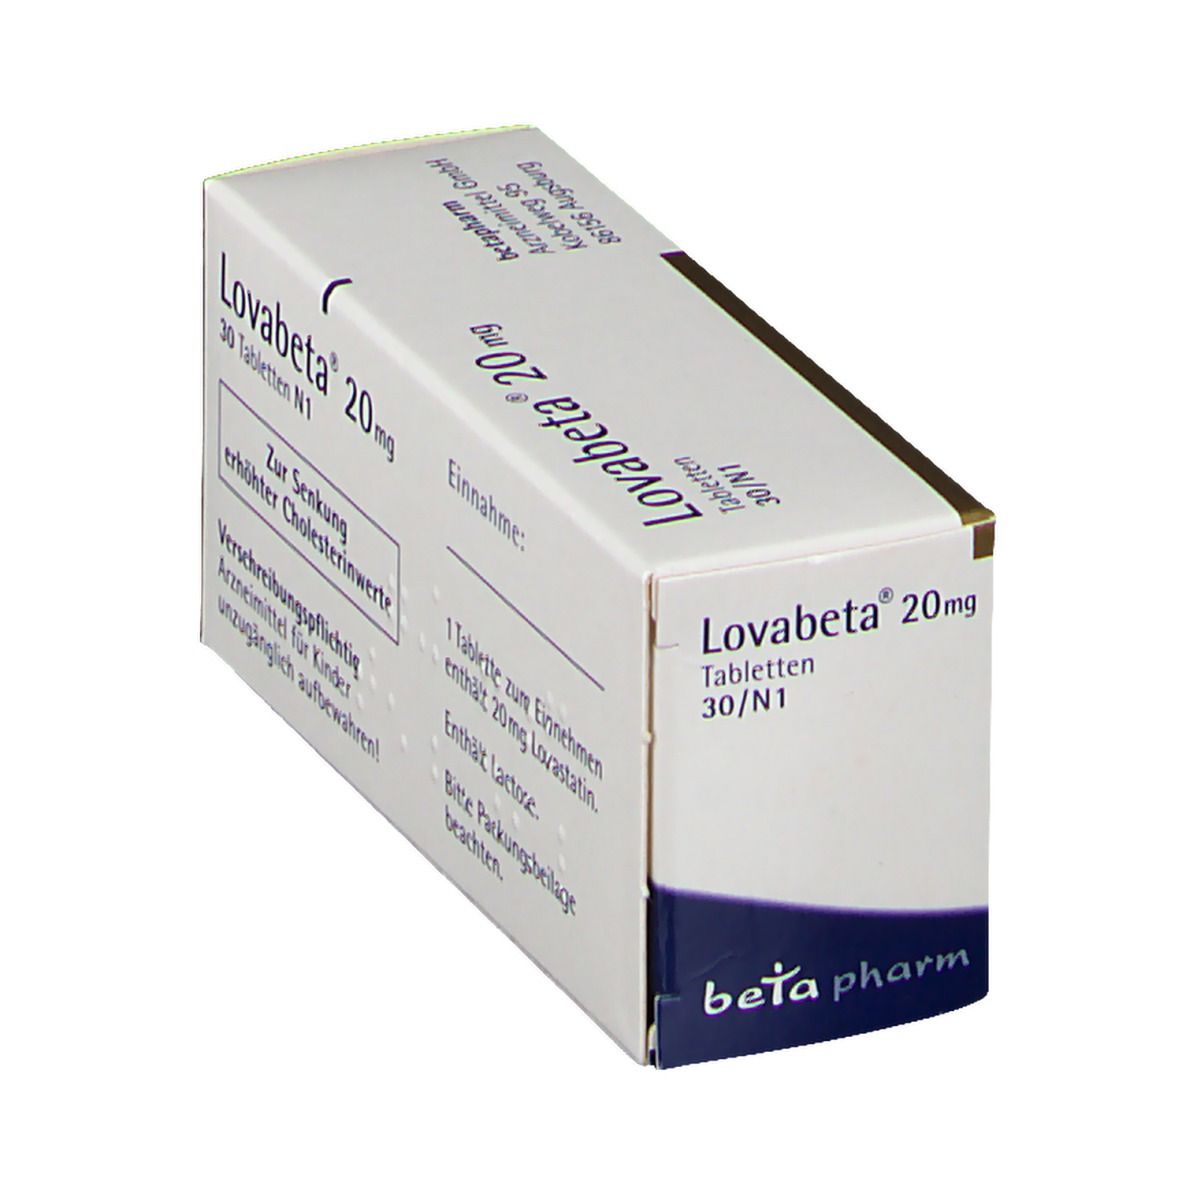 Lovabeta® 20 mg